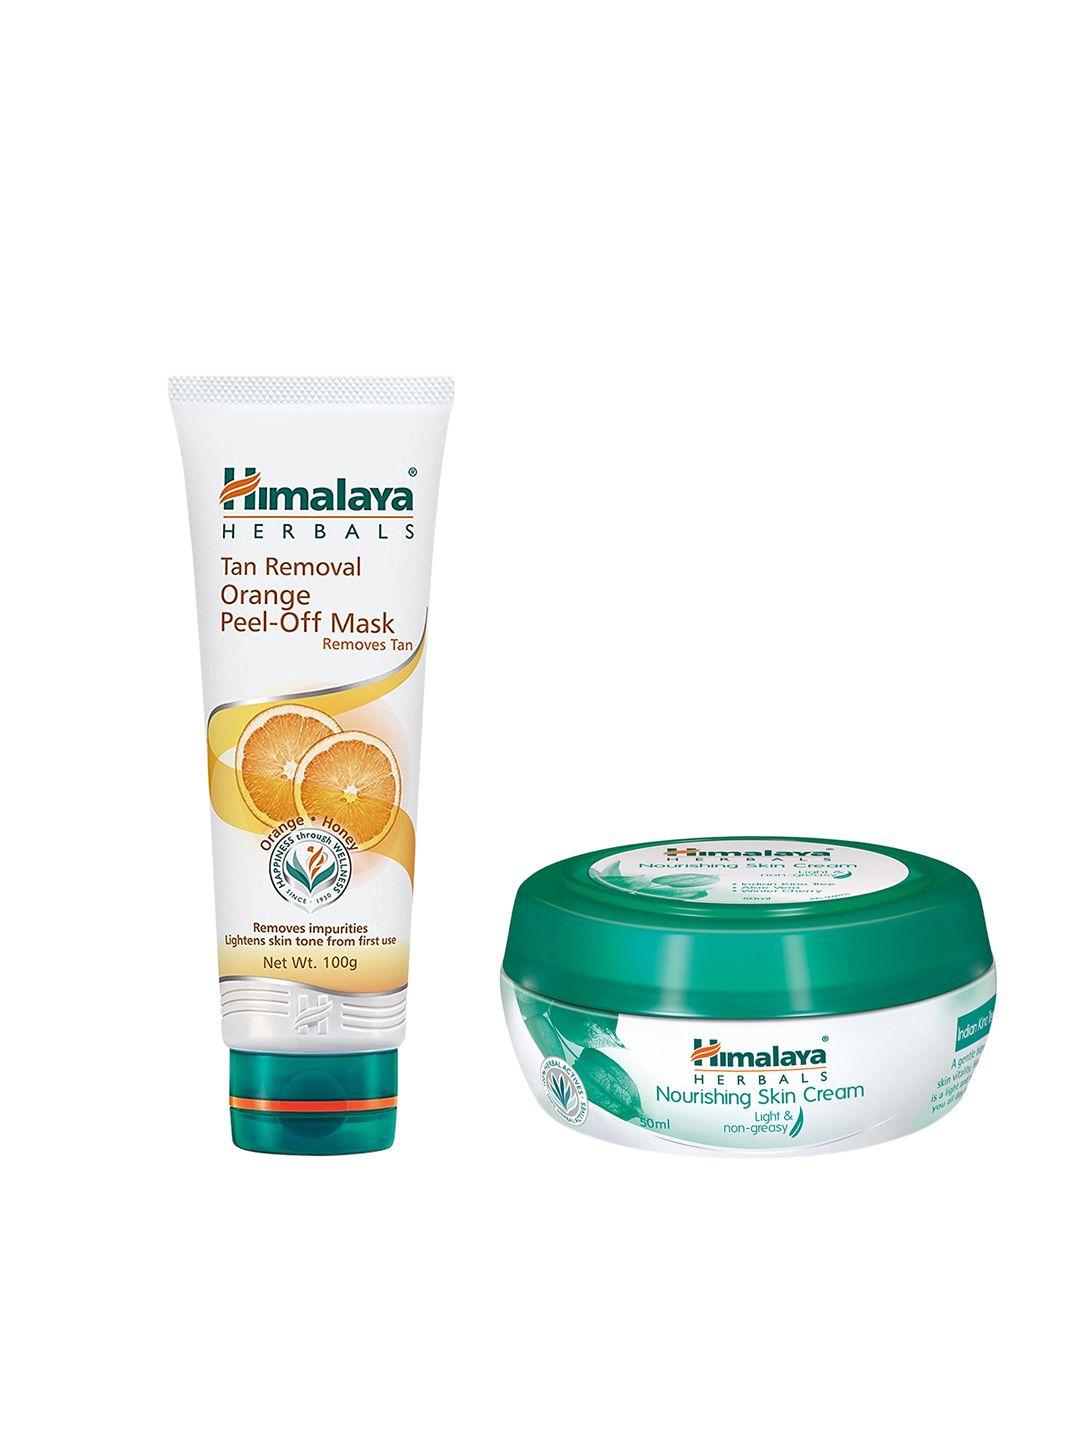 himalaya set of tan removal orange peel-off mask & nourishing skin cream